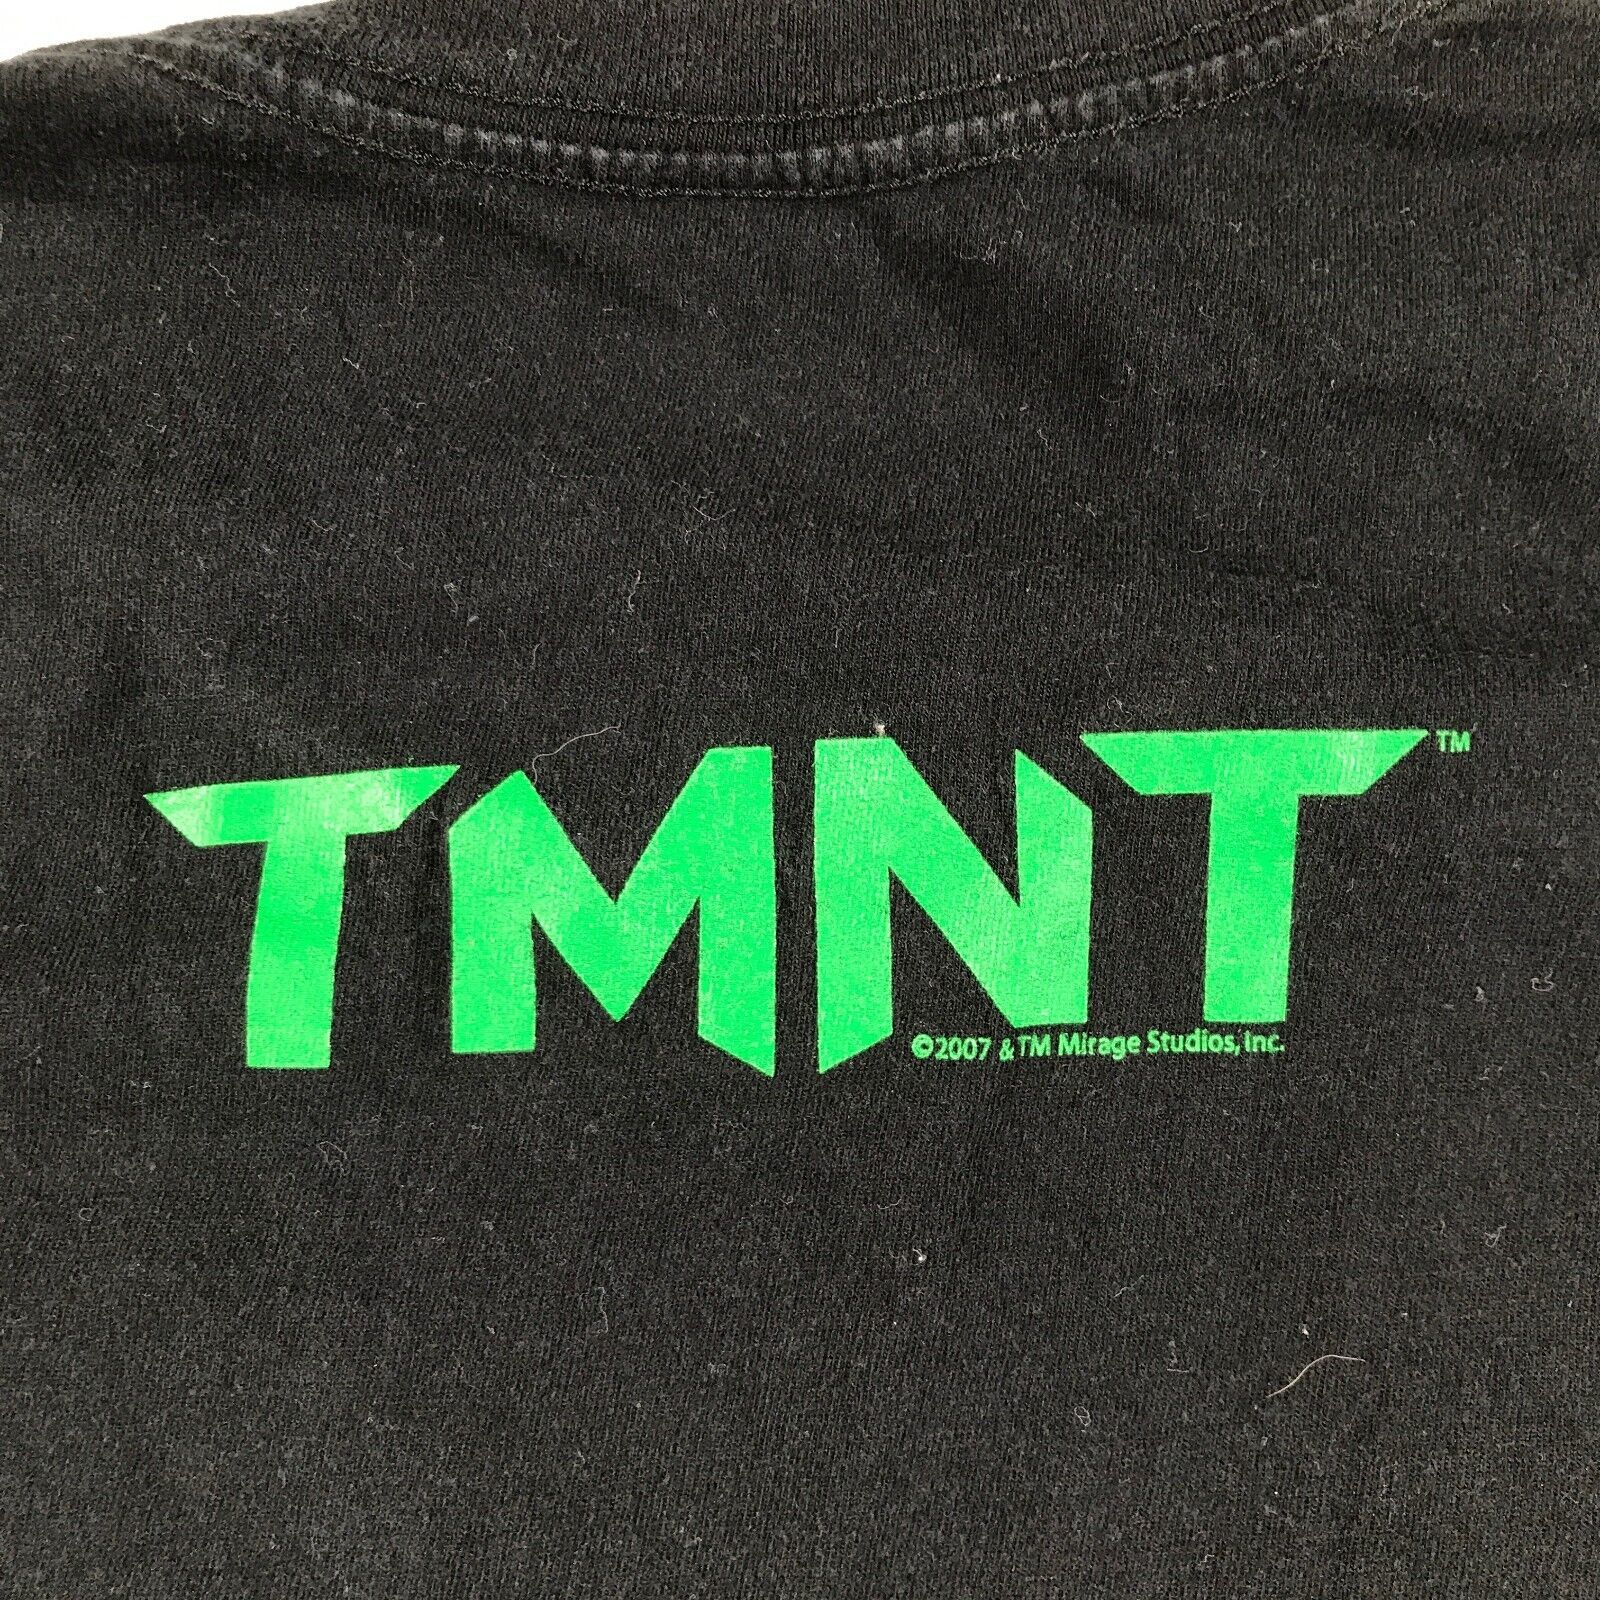 Teenage Mutant Ninja Turtles Shirt Large Brown Mens Tmnt Graphic Tee 2009  Used